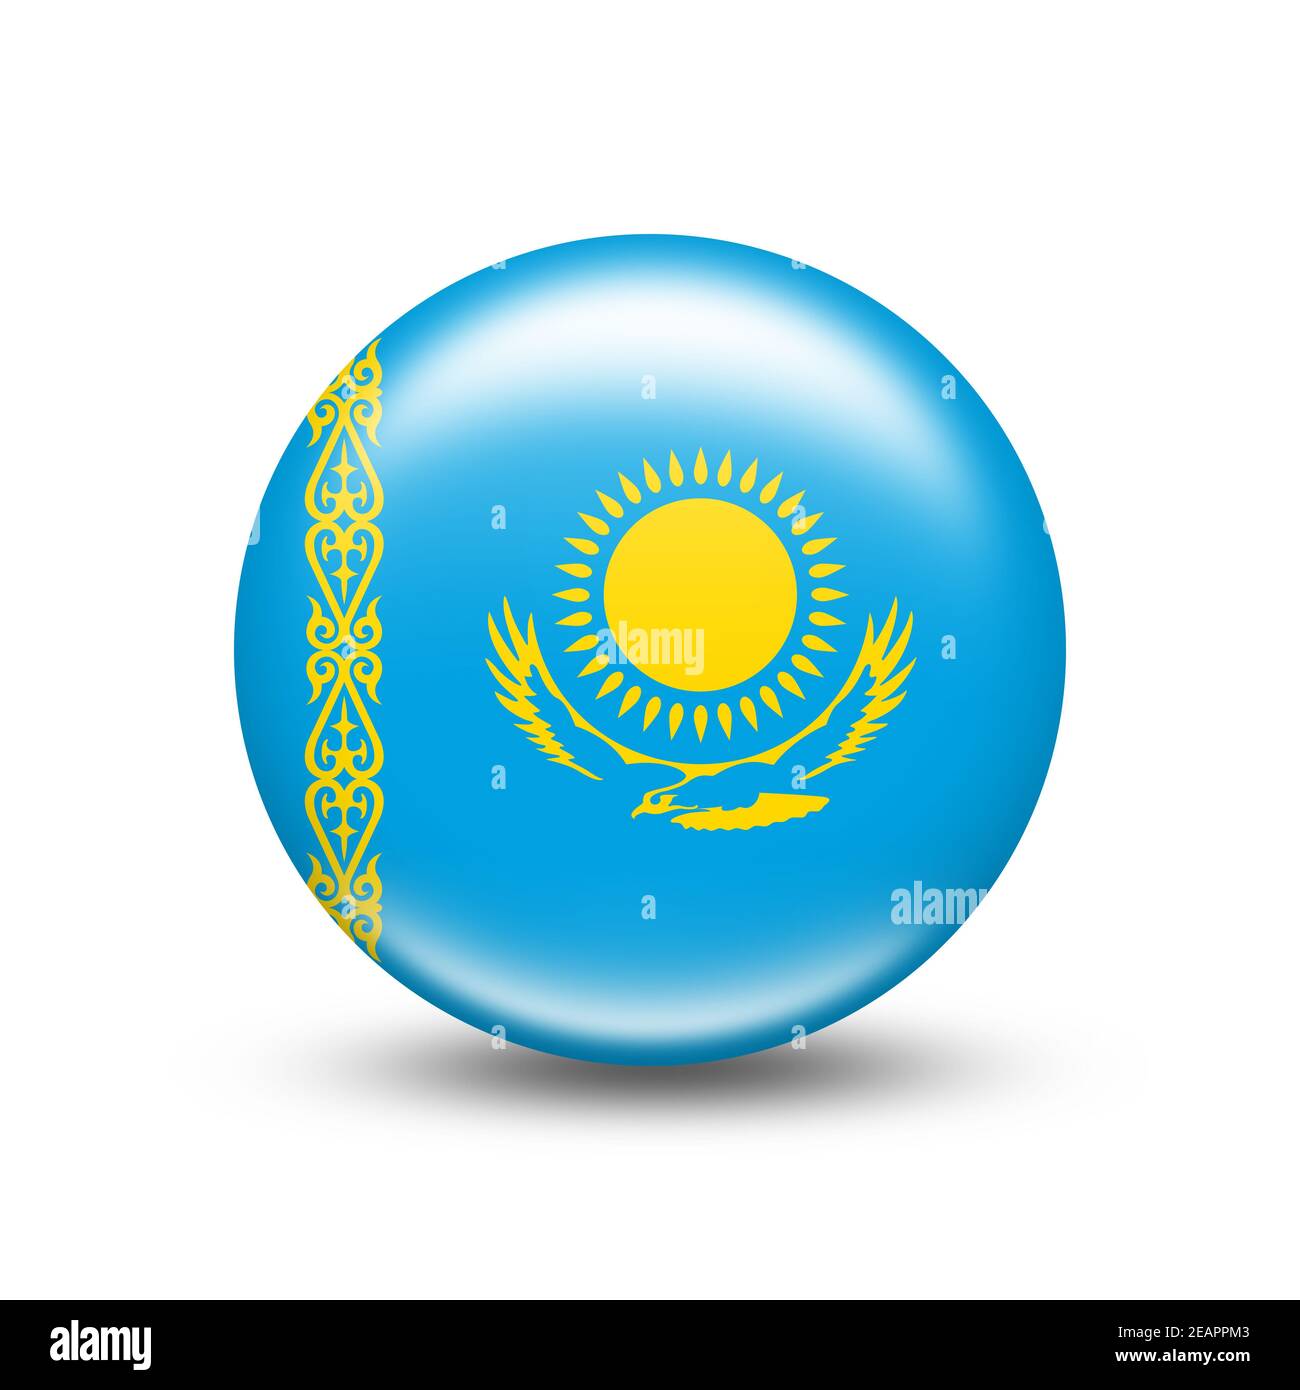 Kazakhstan flags waving Stock Photo by ©borjomi88 118197558